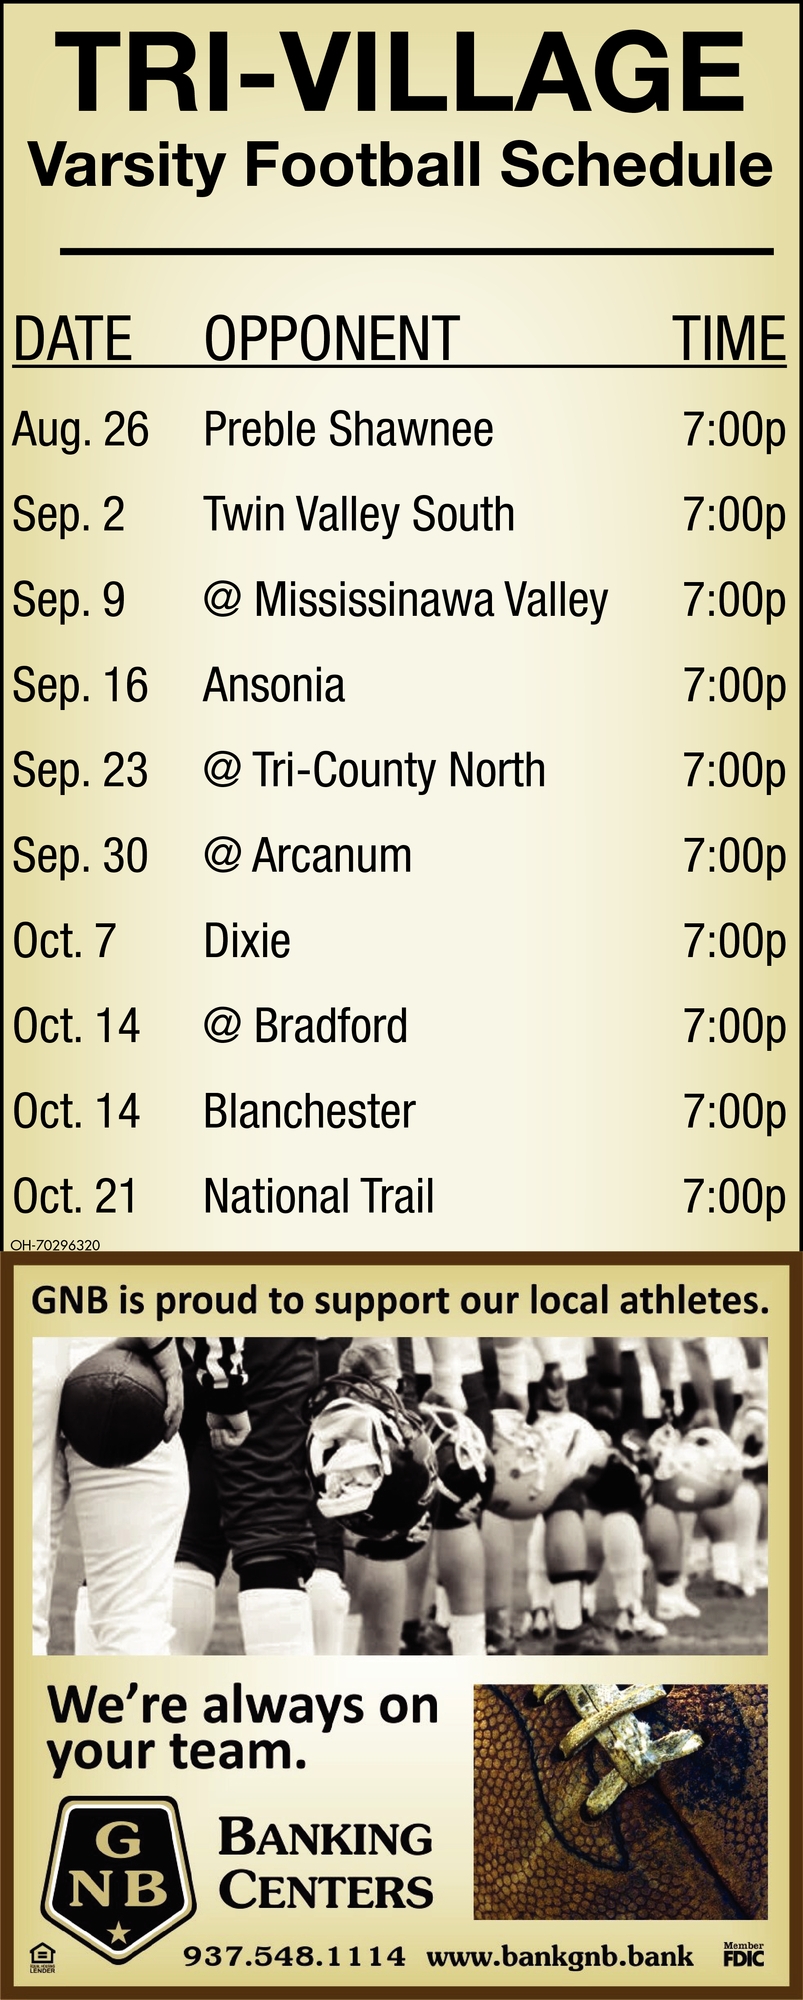 Tri-Village Varsity Football Schedule